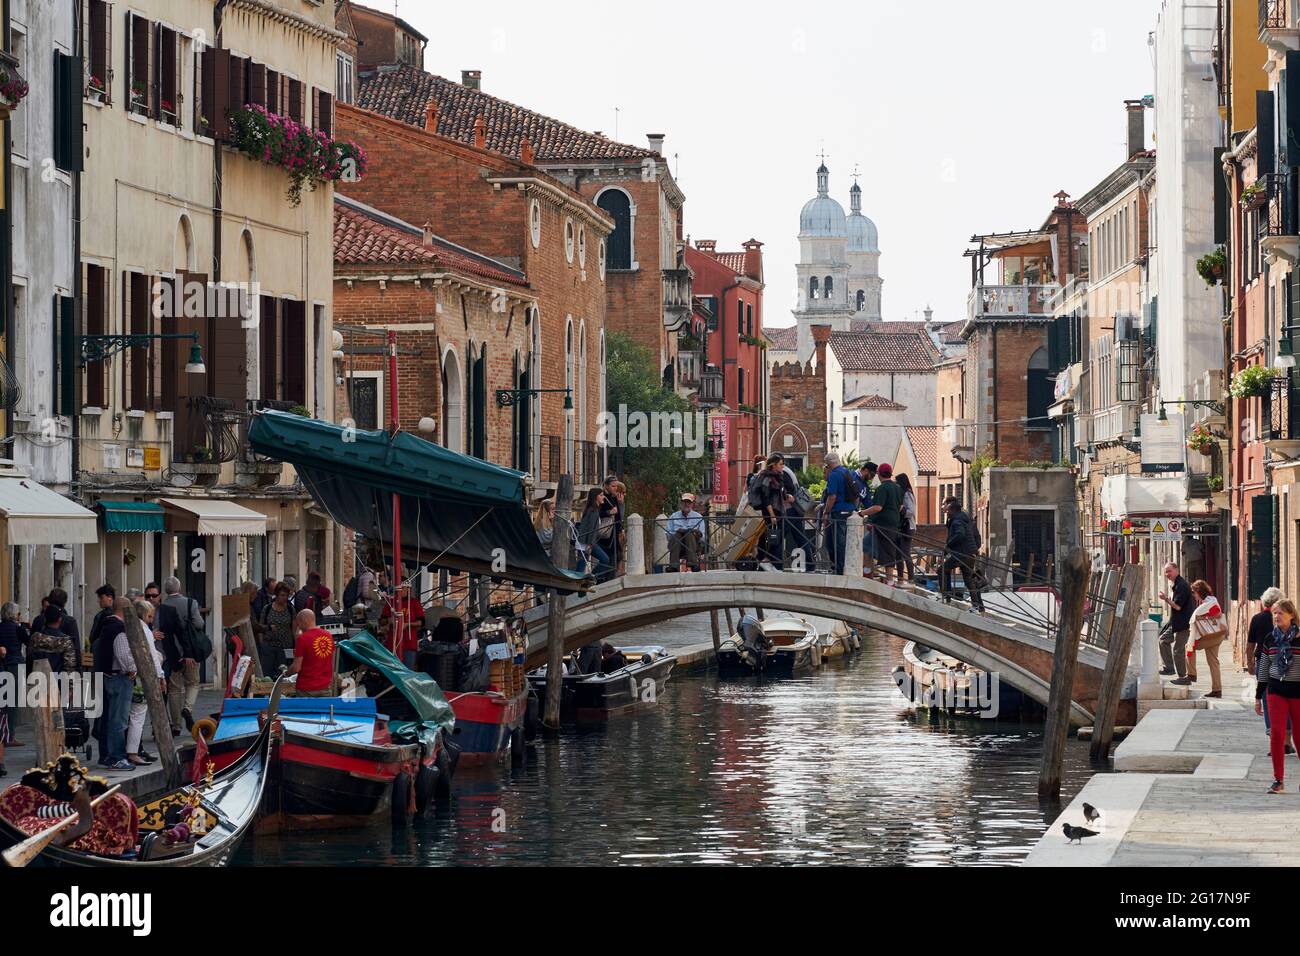 Les canaux de Venise avec l'architecture italienne, Venise, Italie, 2017 Banque D'Images